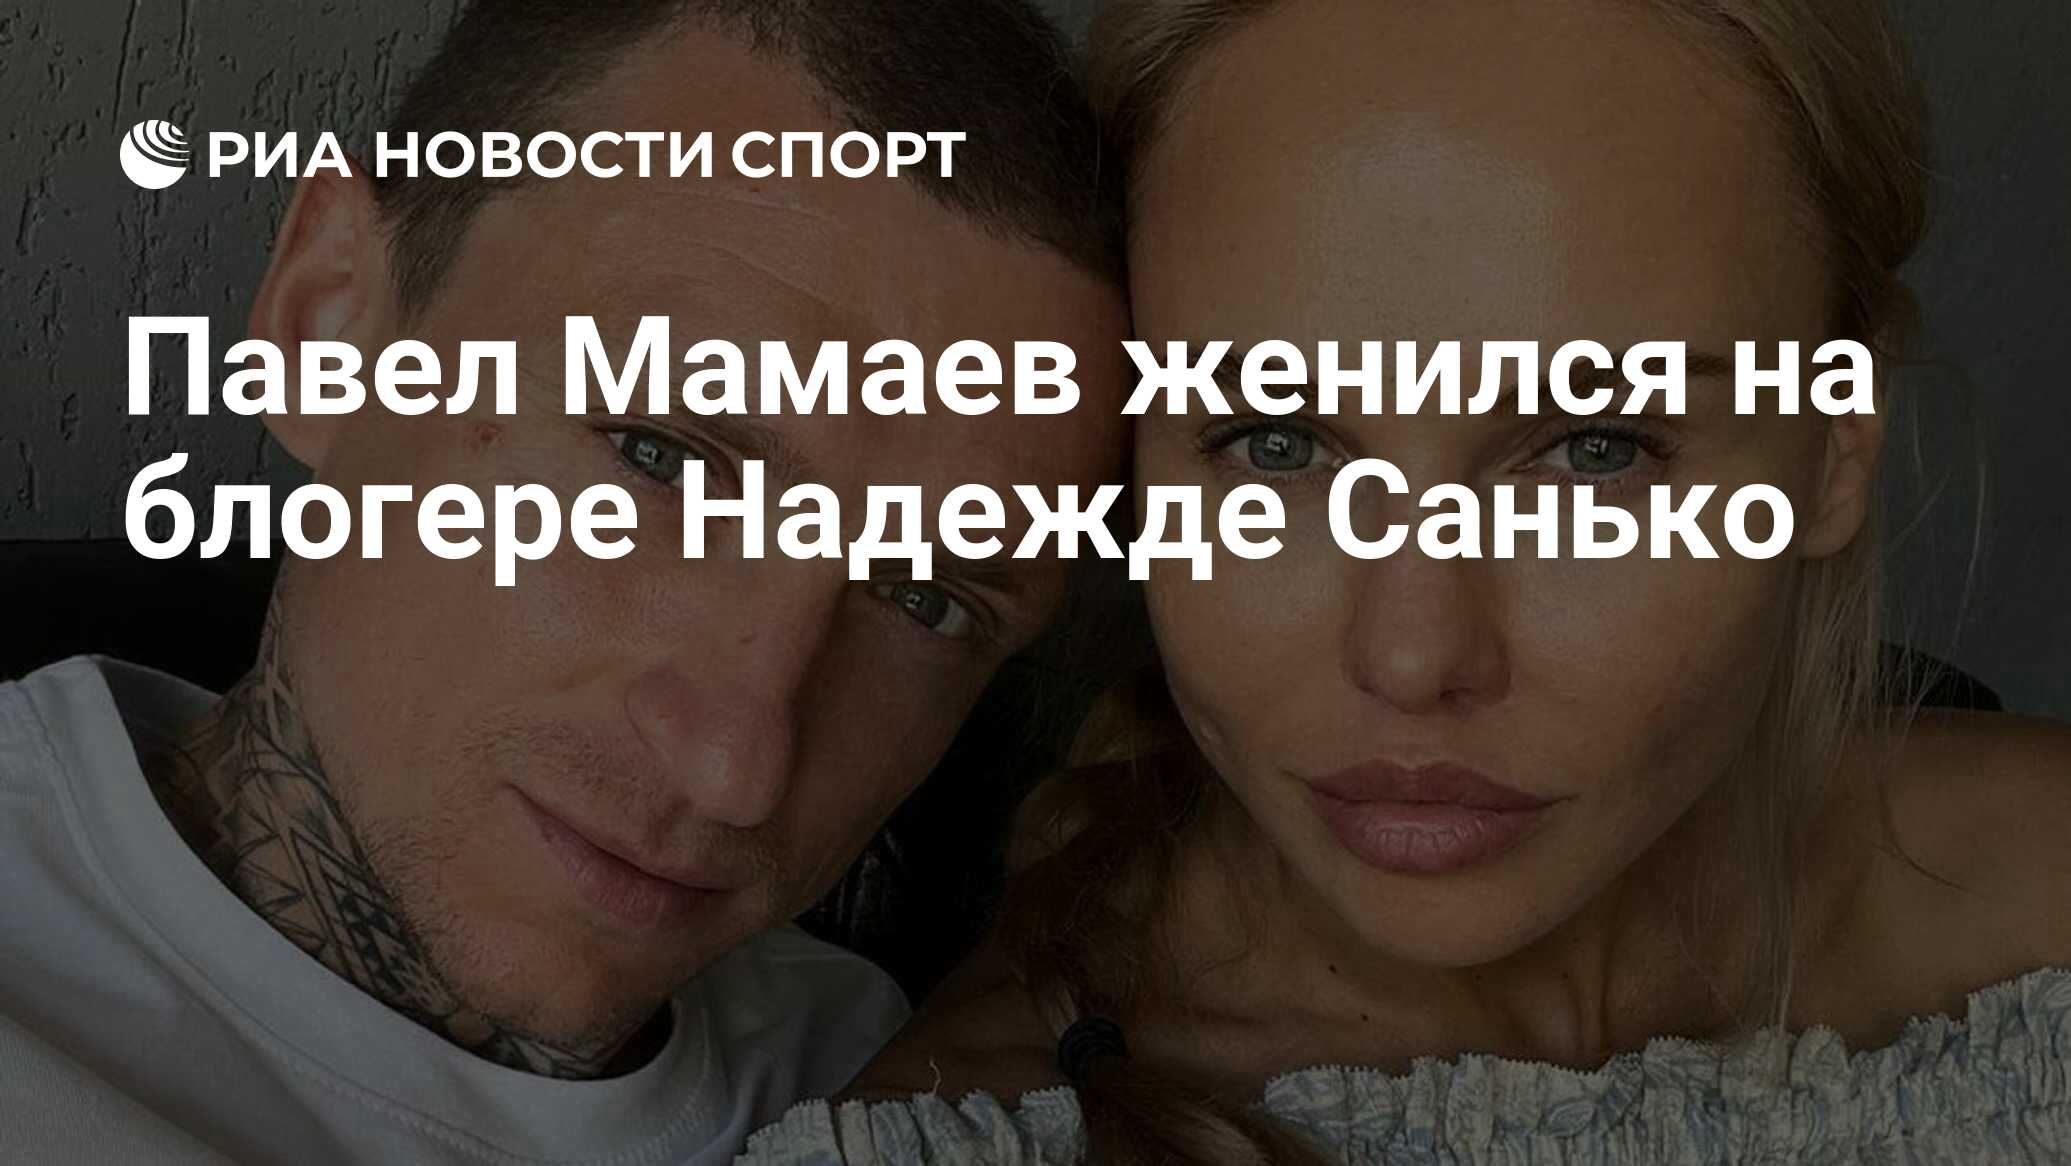 Павел Мамаев женился на блогере Надежде Санько РИА Новости Спорт 270120220j